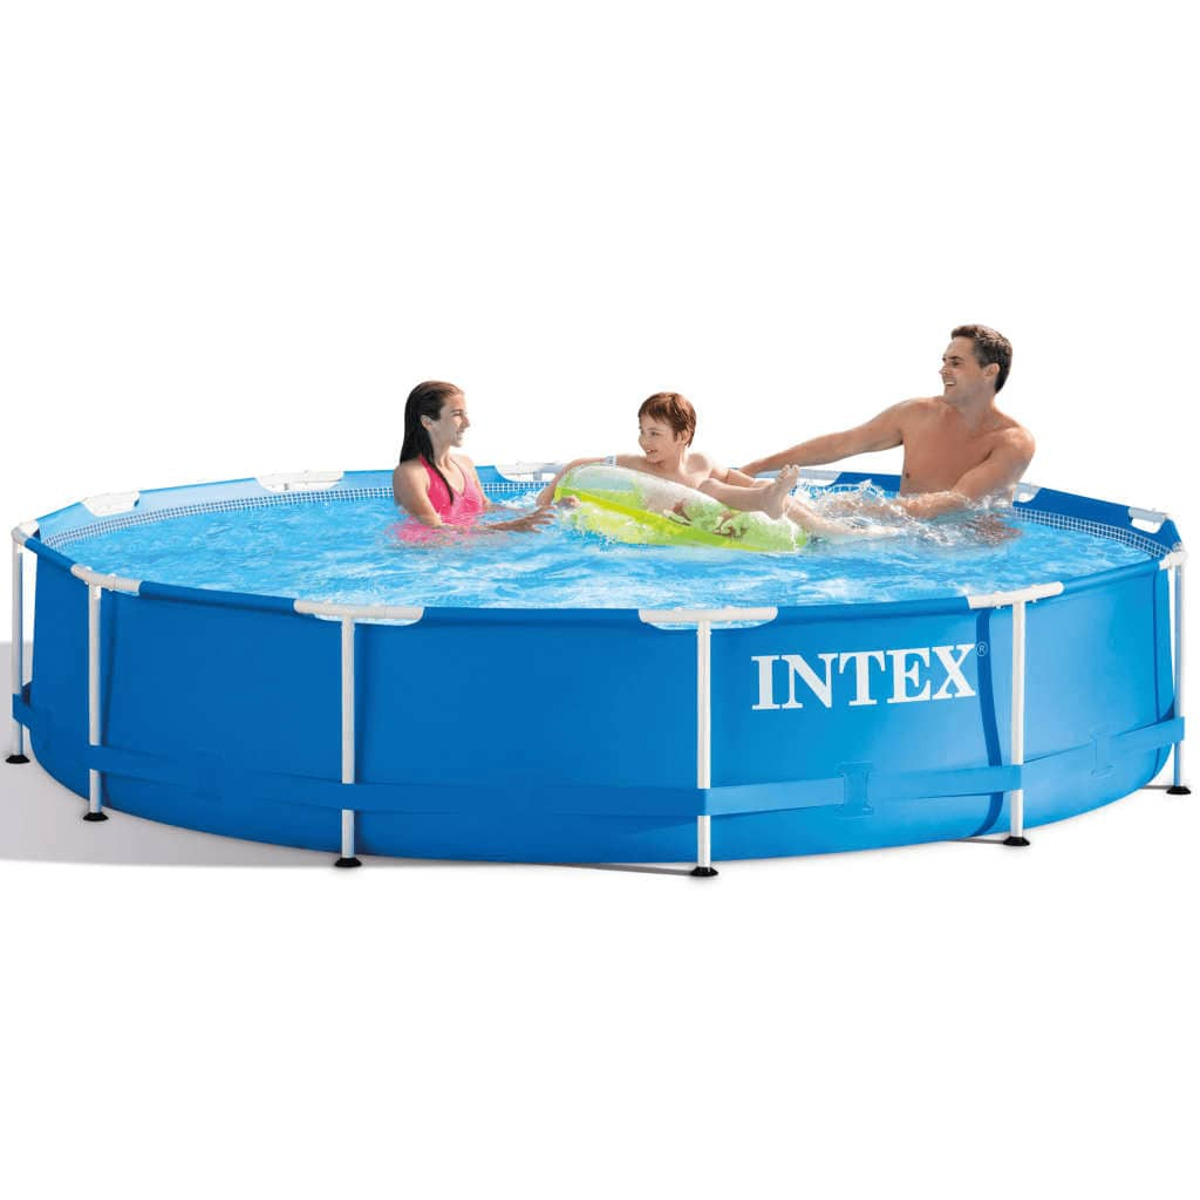 INTEX 3202756 Pool, Blau